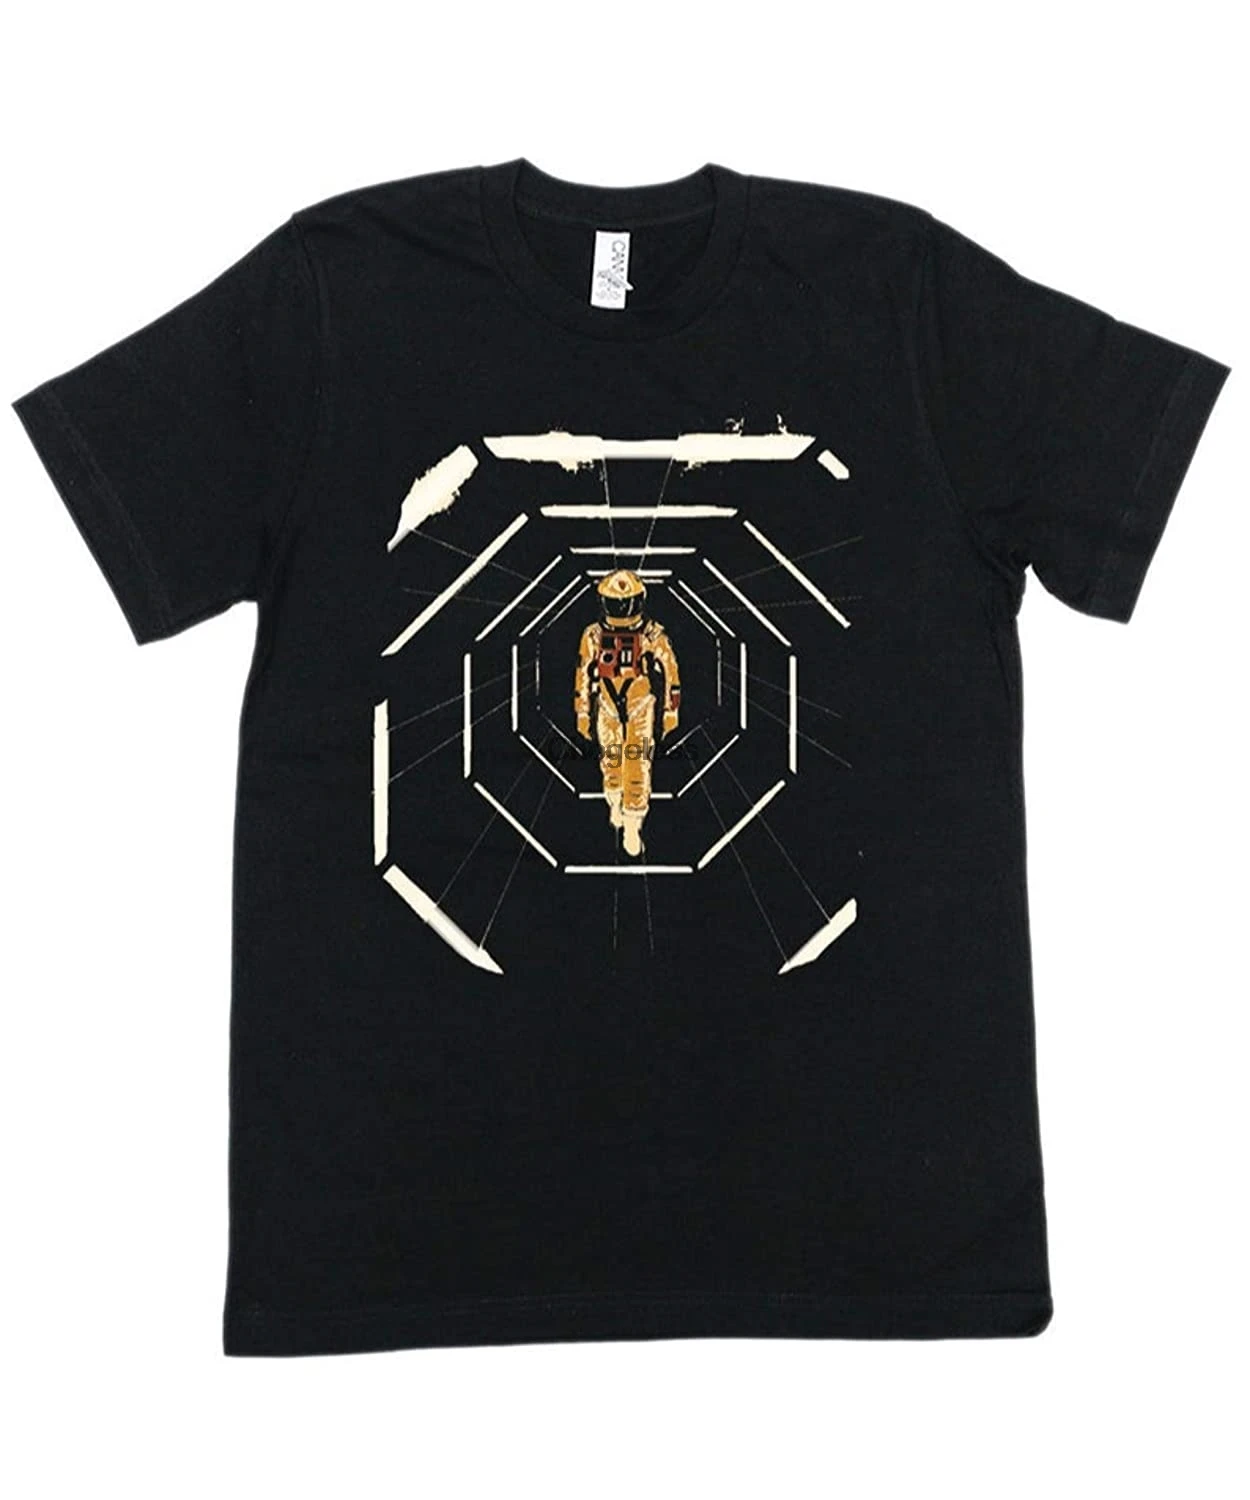 

Футболка для художественного фильма 2001 космическая Одиссея туннель Классическая крутая графическая футболка для мужчин женщин мужчин